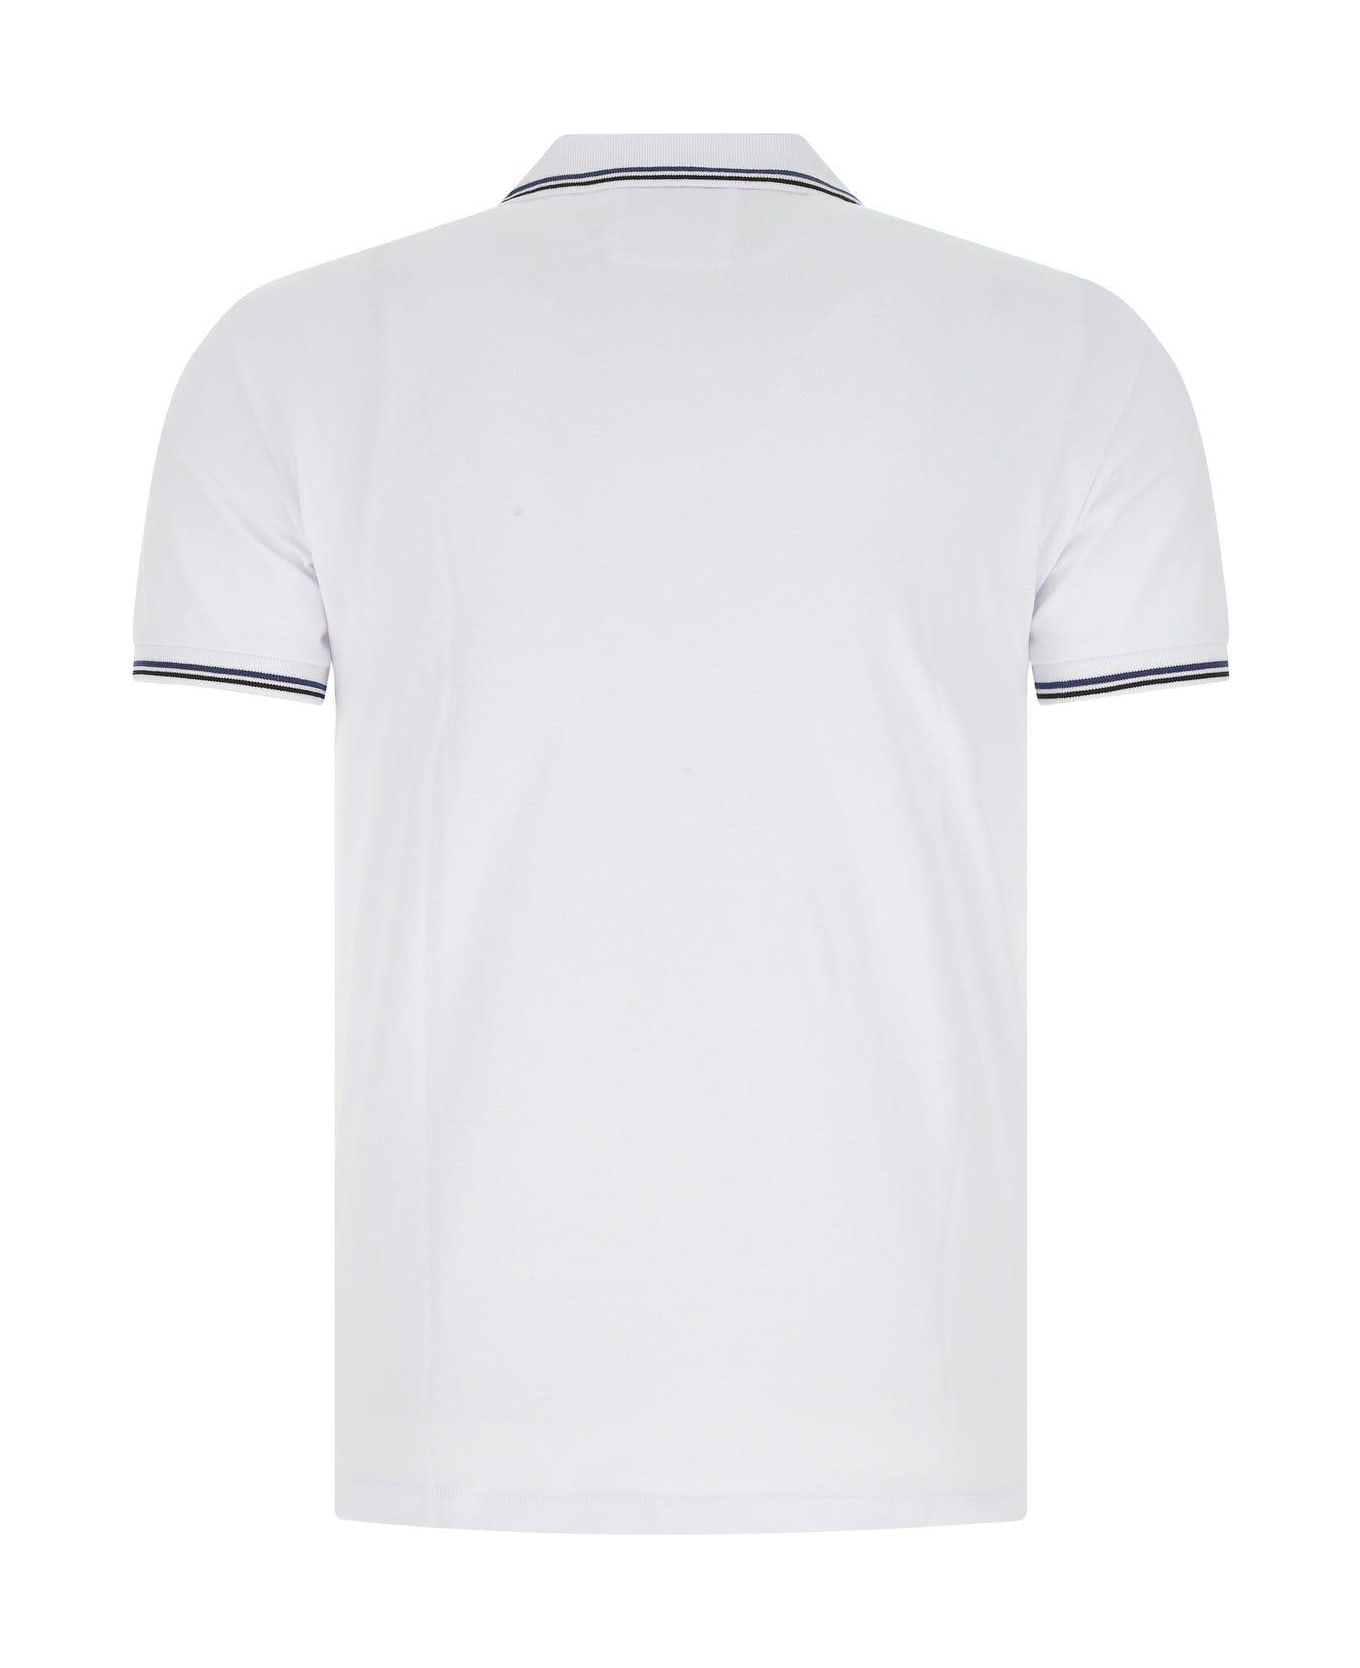 Emporio Armani White Stretch Cotton Polo Shirt - Bianco Ottico シャツ